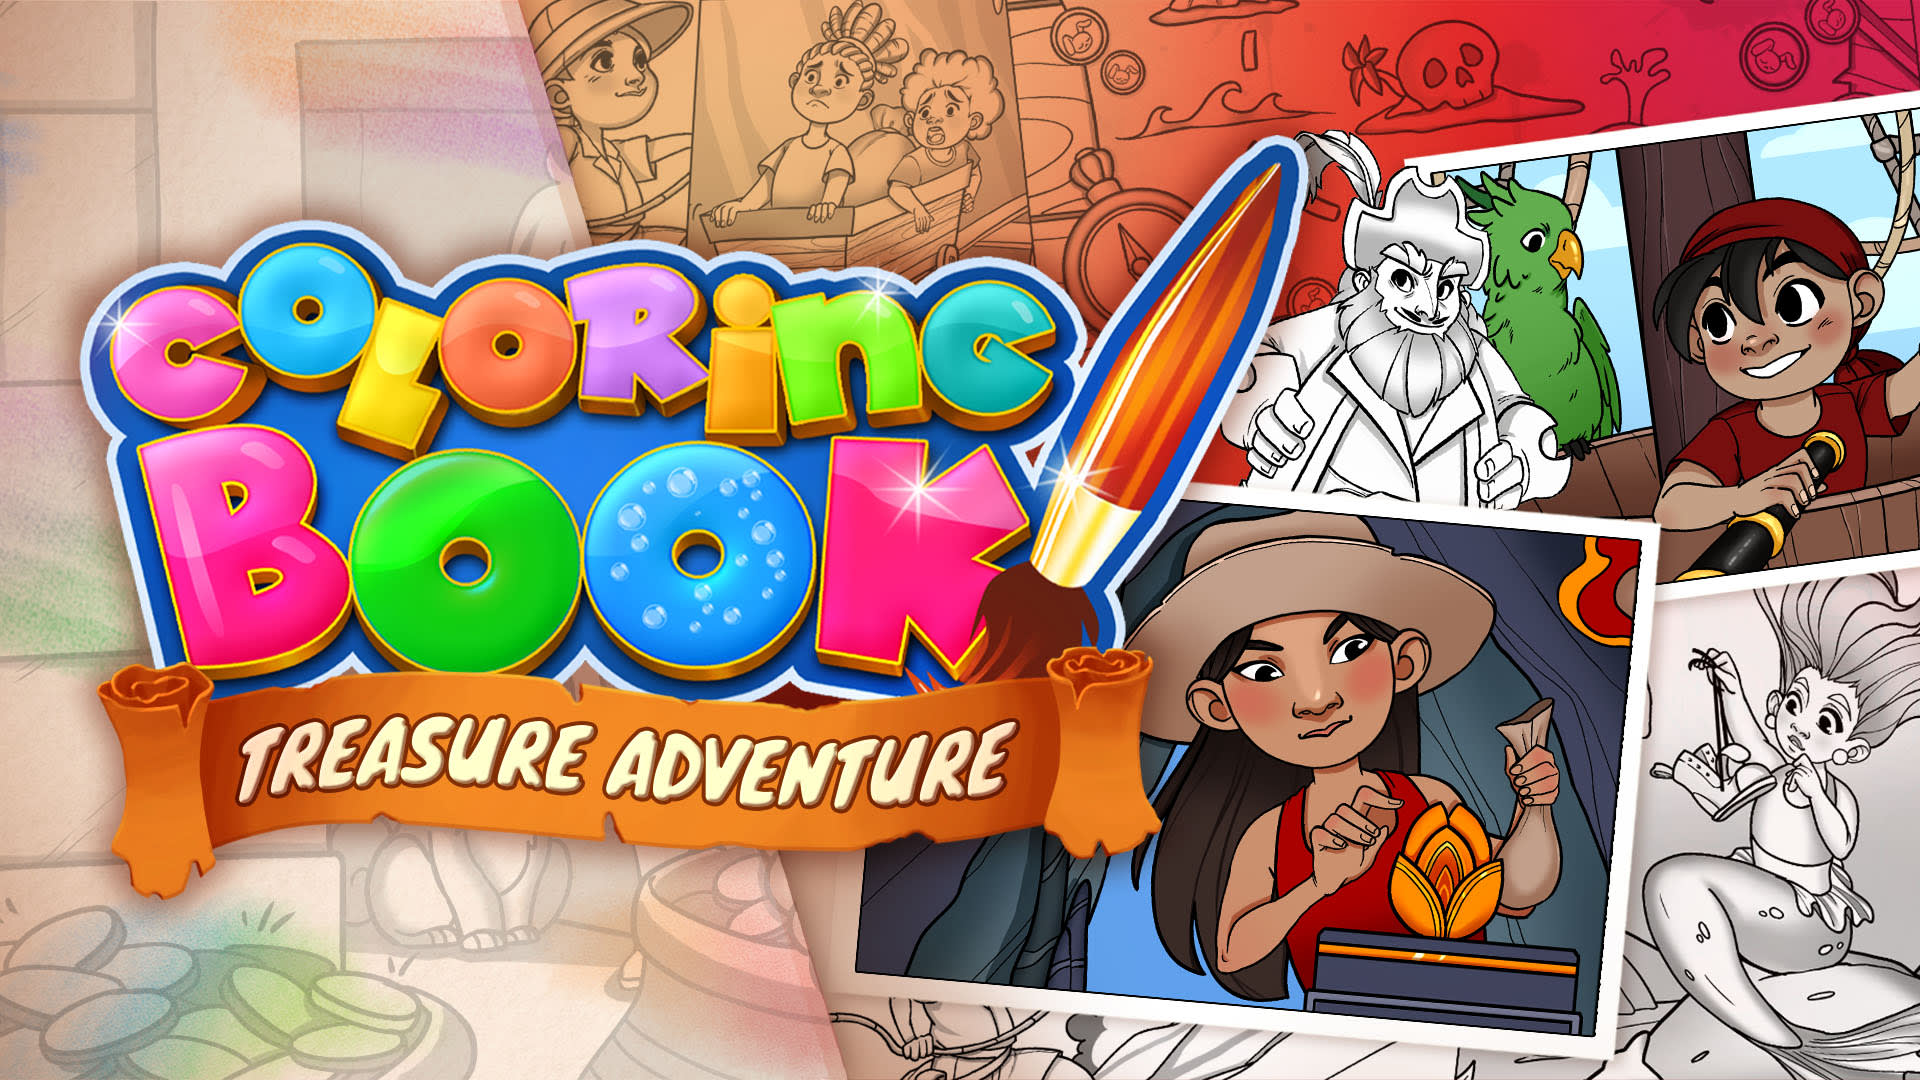 Coloring Book: Treasure Adventure - 29 nouveaux dessins 